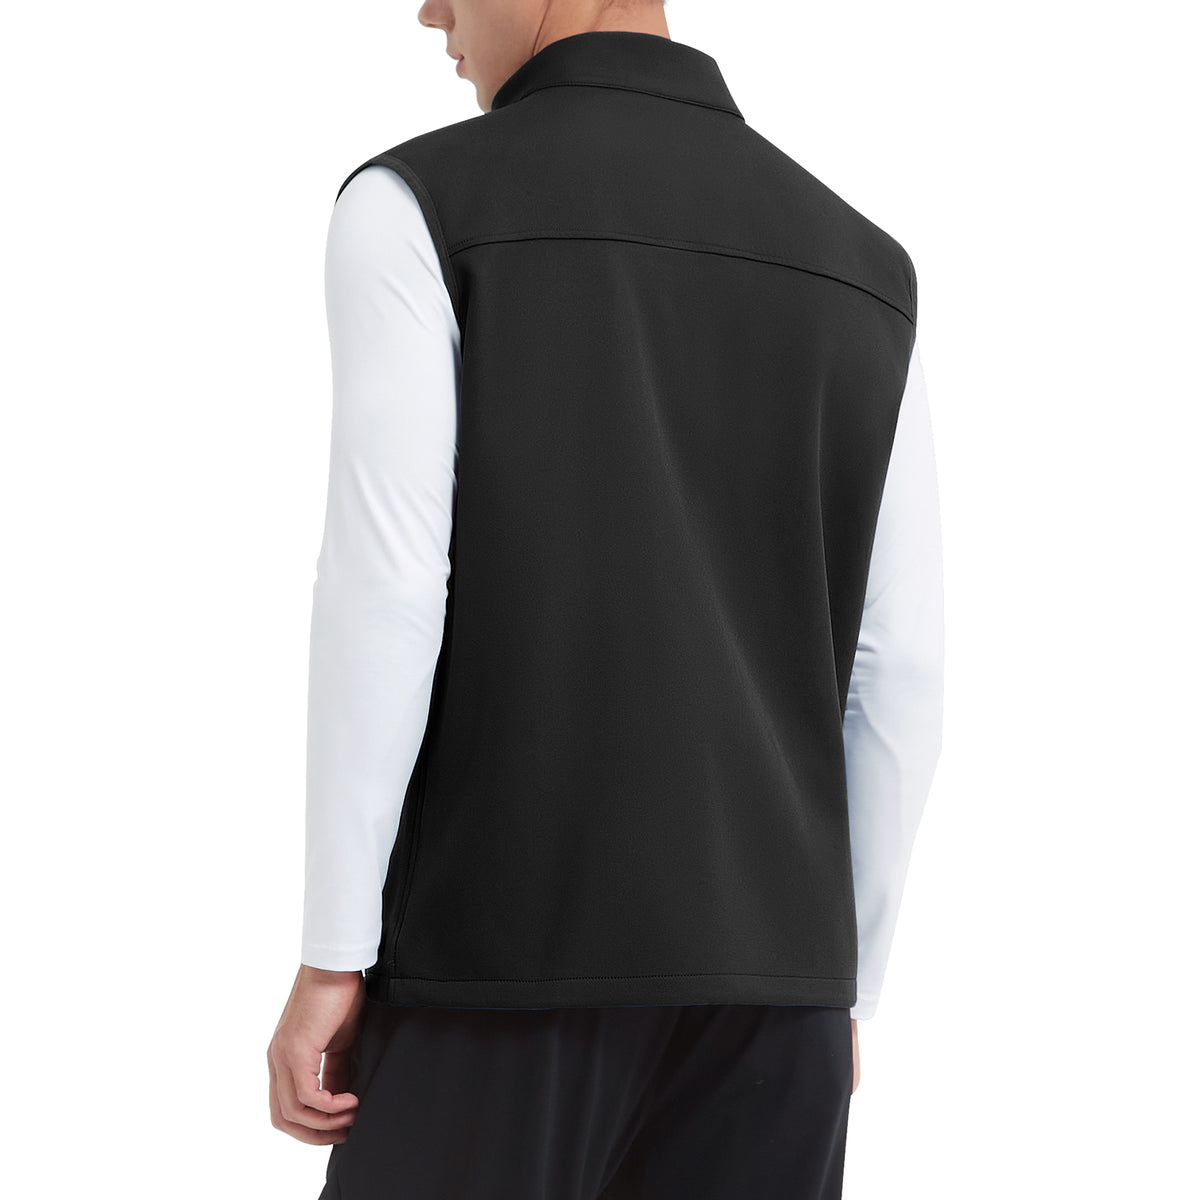 MOTEEPI Mens Sleeveless  Fleece Lined Lightweight  Golf Vests Outerwear